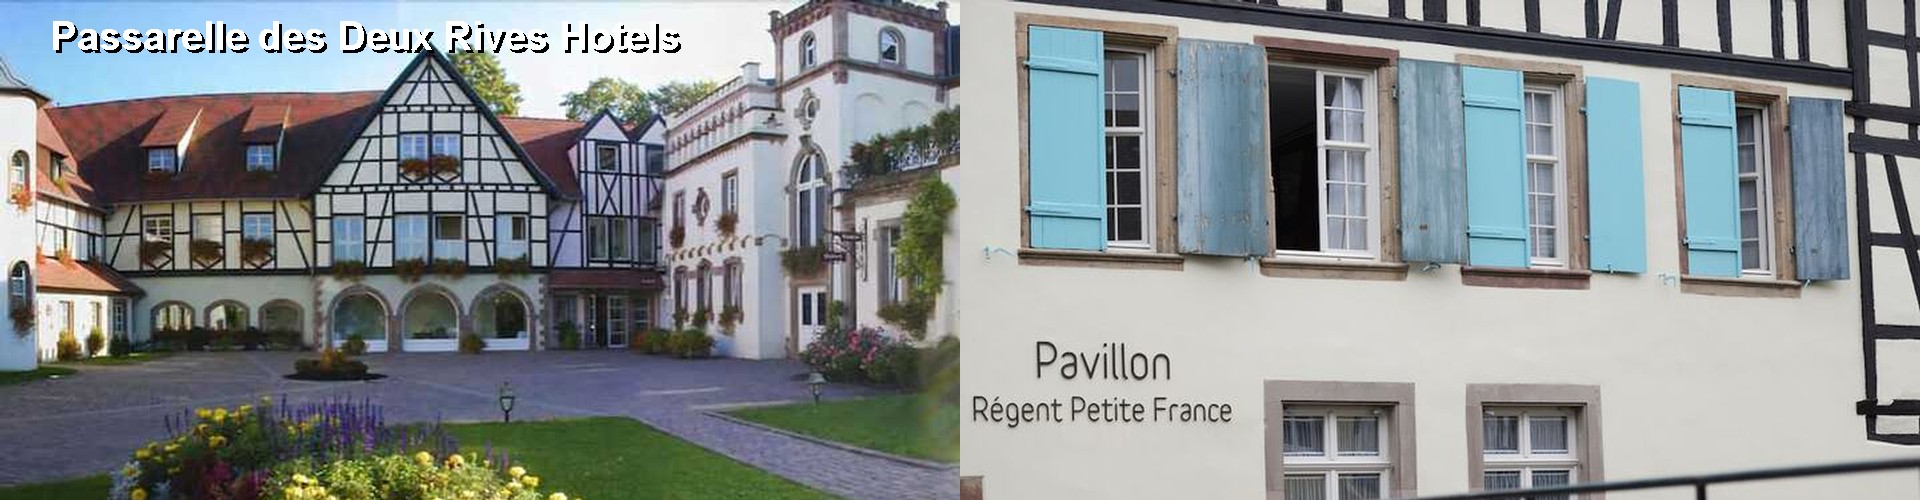 5 Best Hotels near Passarelle des Deux Rives